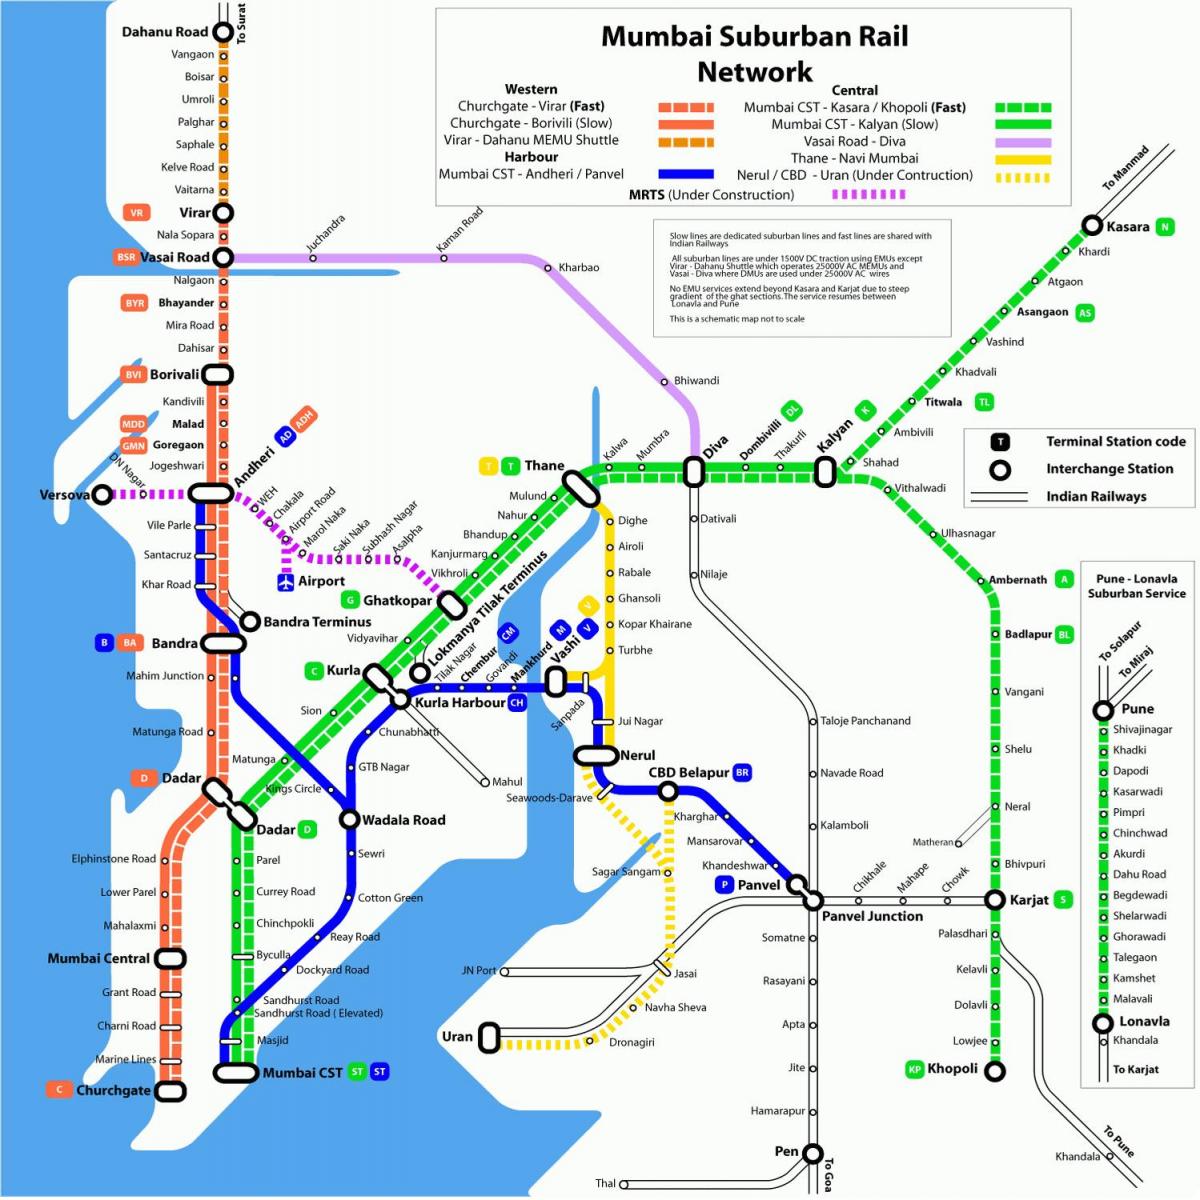 Bombaj lokalnego dworca trasę na mapie